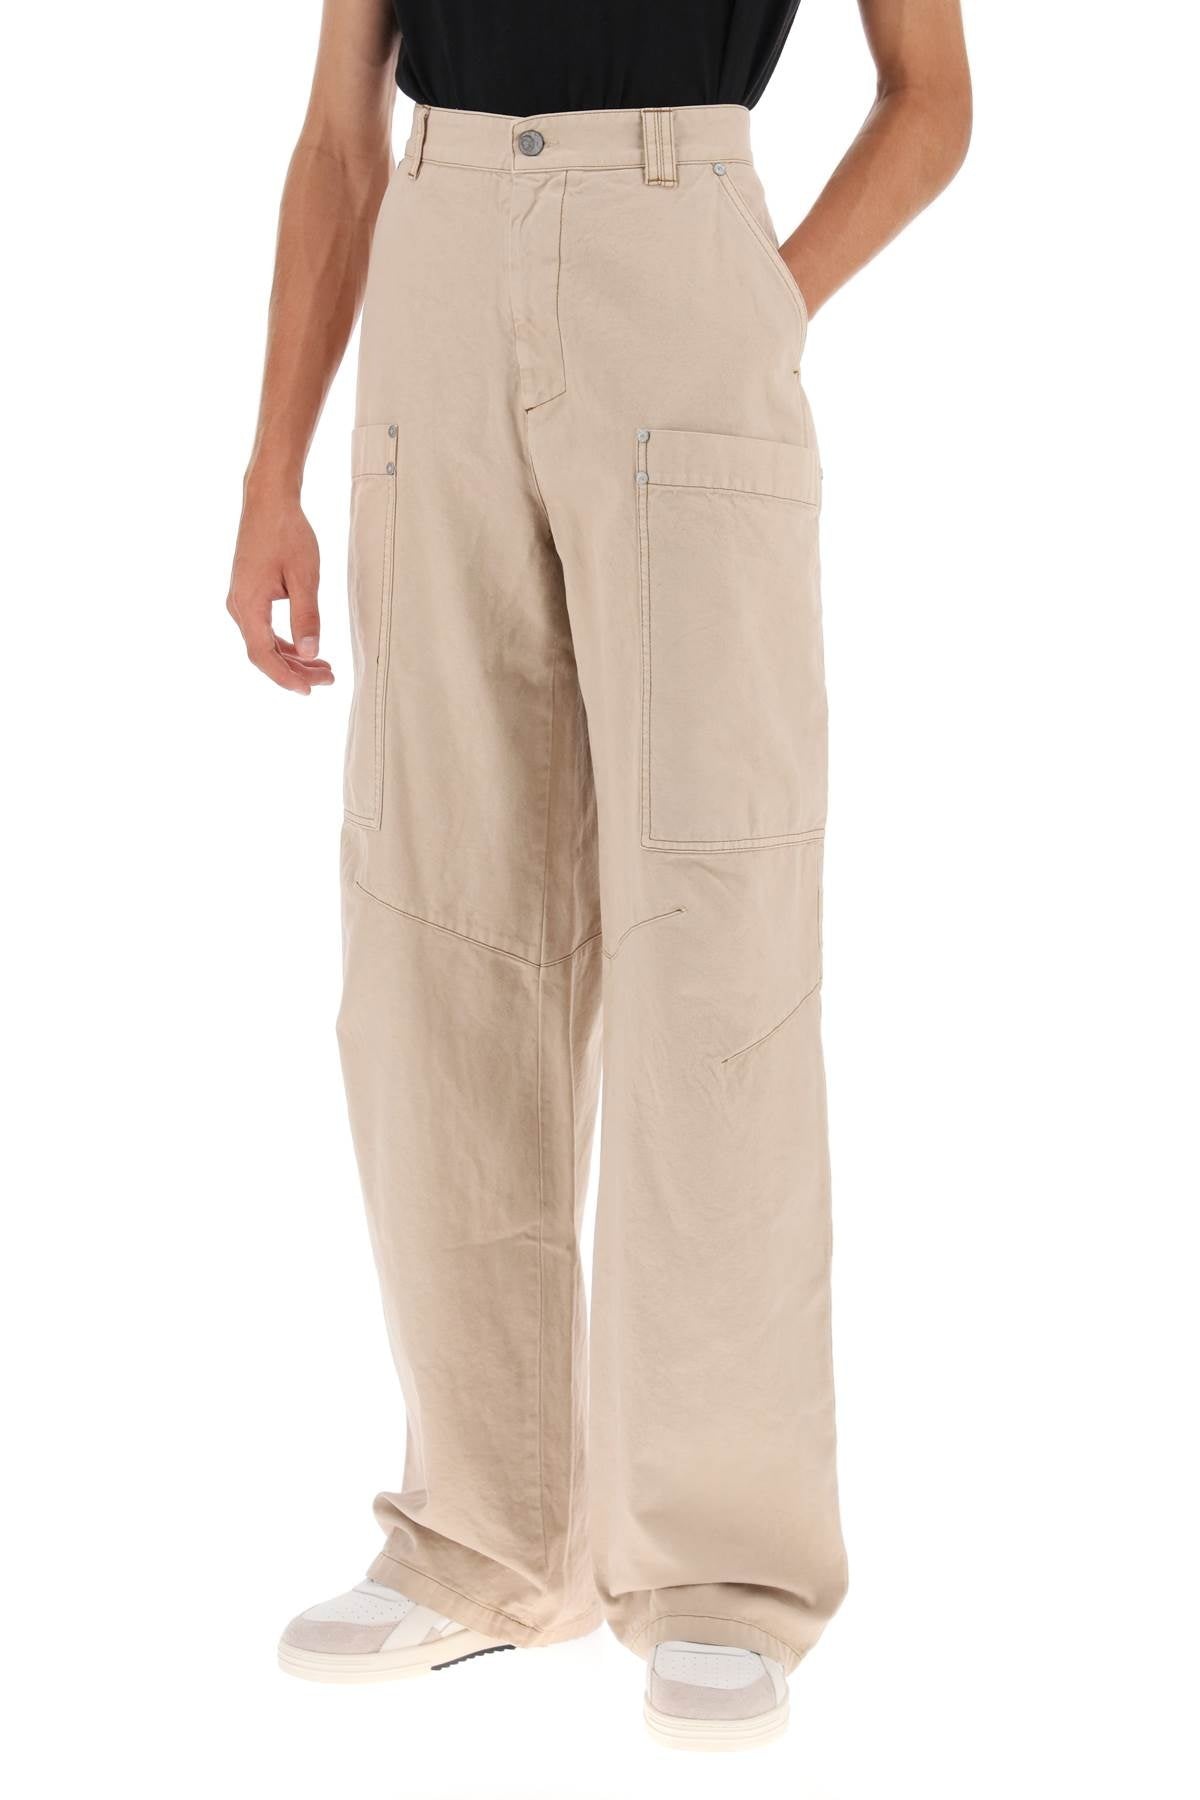 Palm Angels Cotton Cargo Pants Men - 4